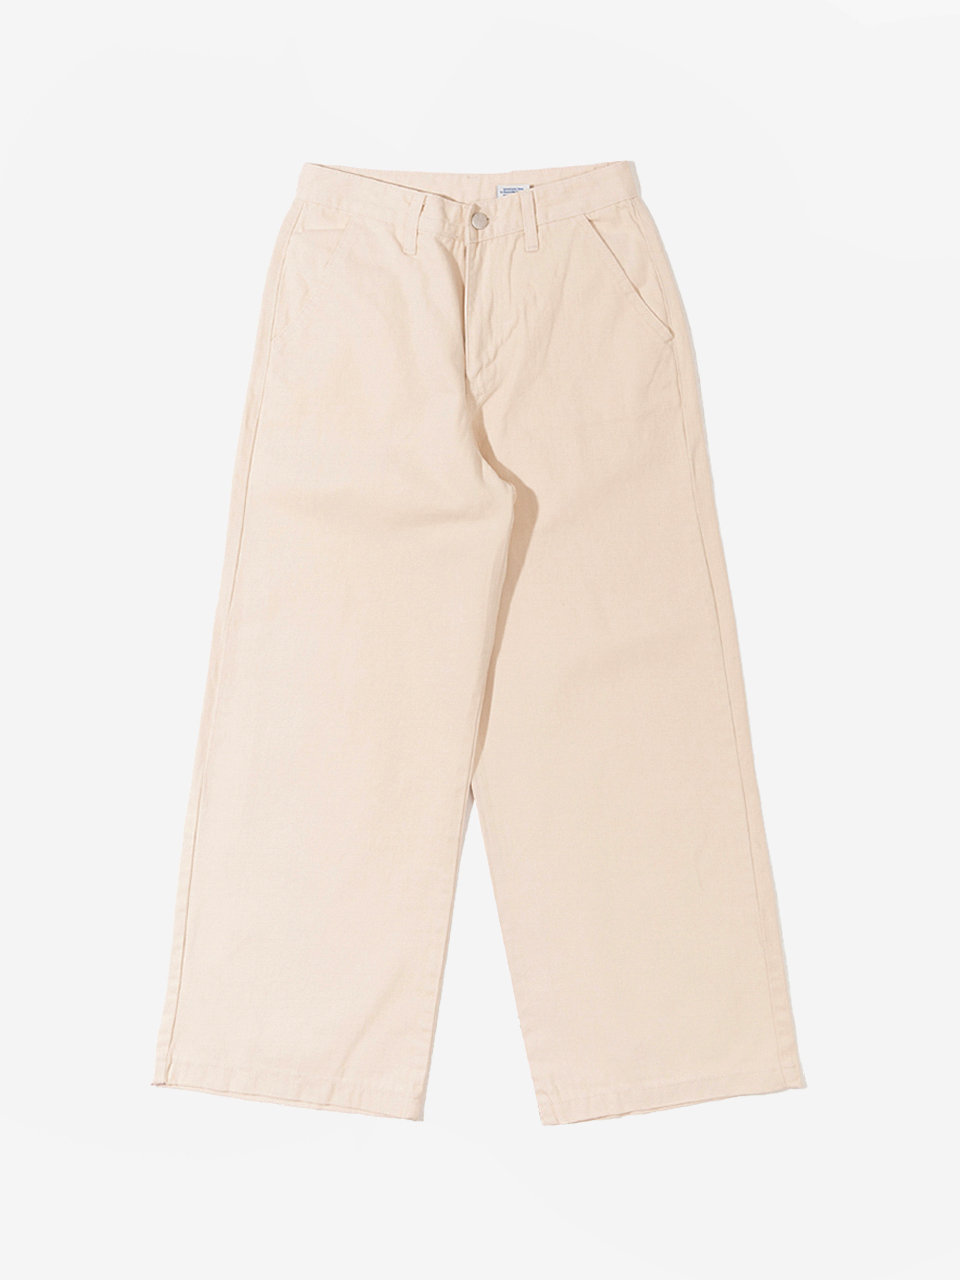 cotton wide pants - light beigeBRENDA BRENDEN